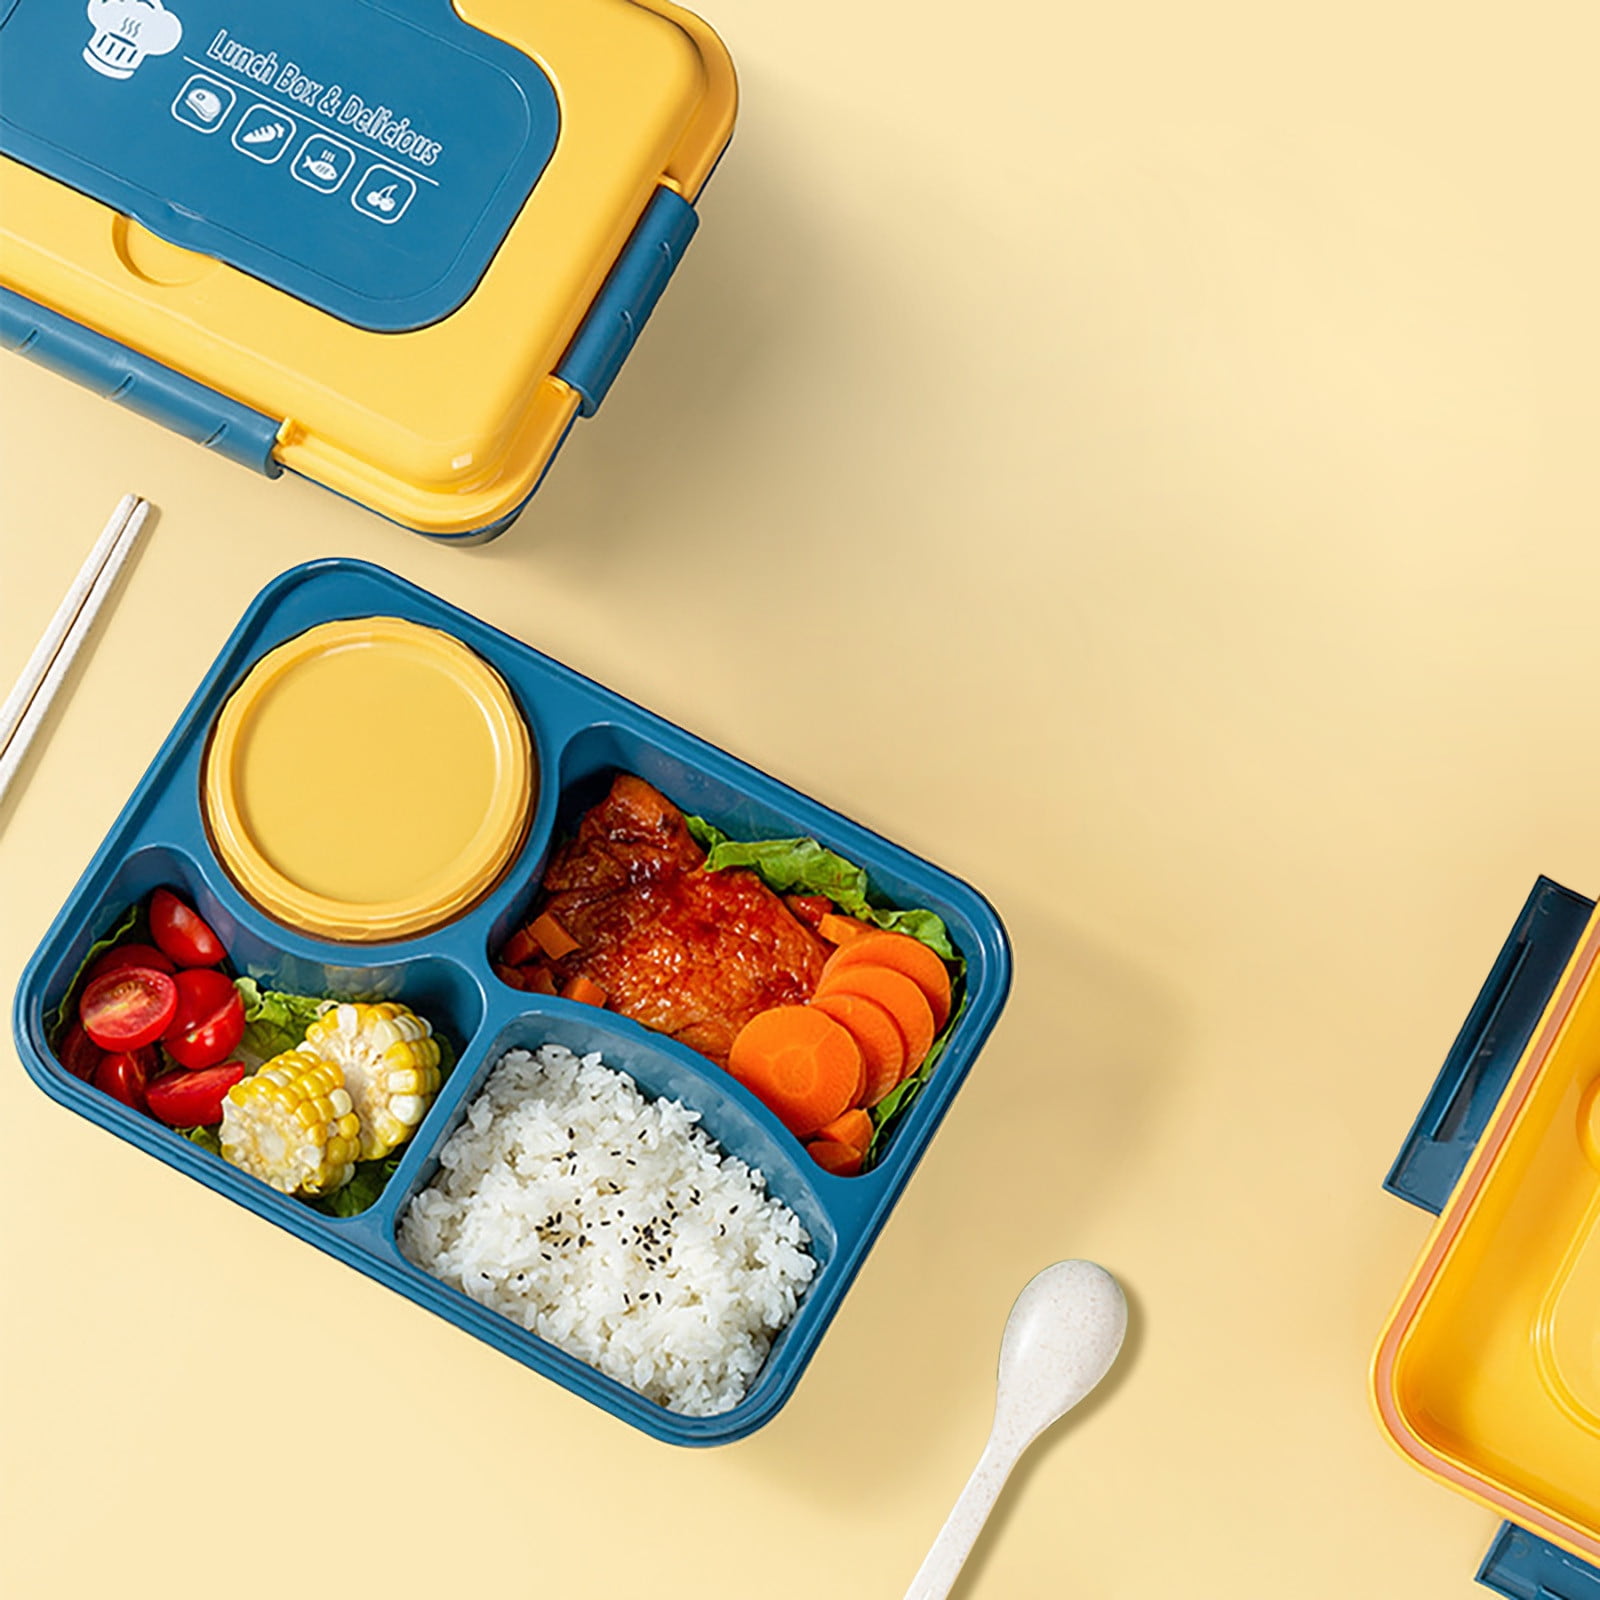 Lunch Box Lunch Box Kids, bento Box Adult Lunch Box, contenedores de  almuerzo para adultos / niños / niños pequeños, 1600ml-5 compartimentos  Bento Lunch Box, Spo reutilizable incorporado